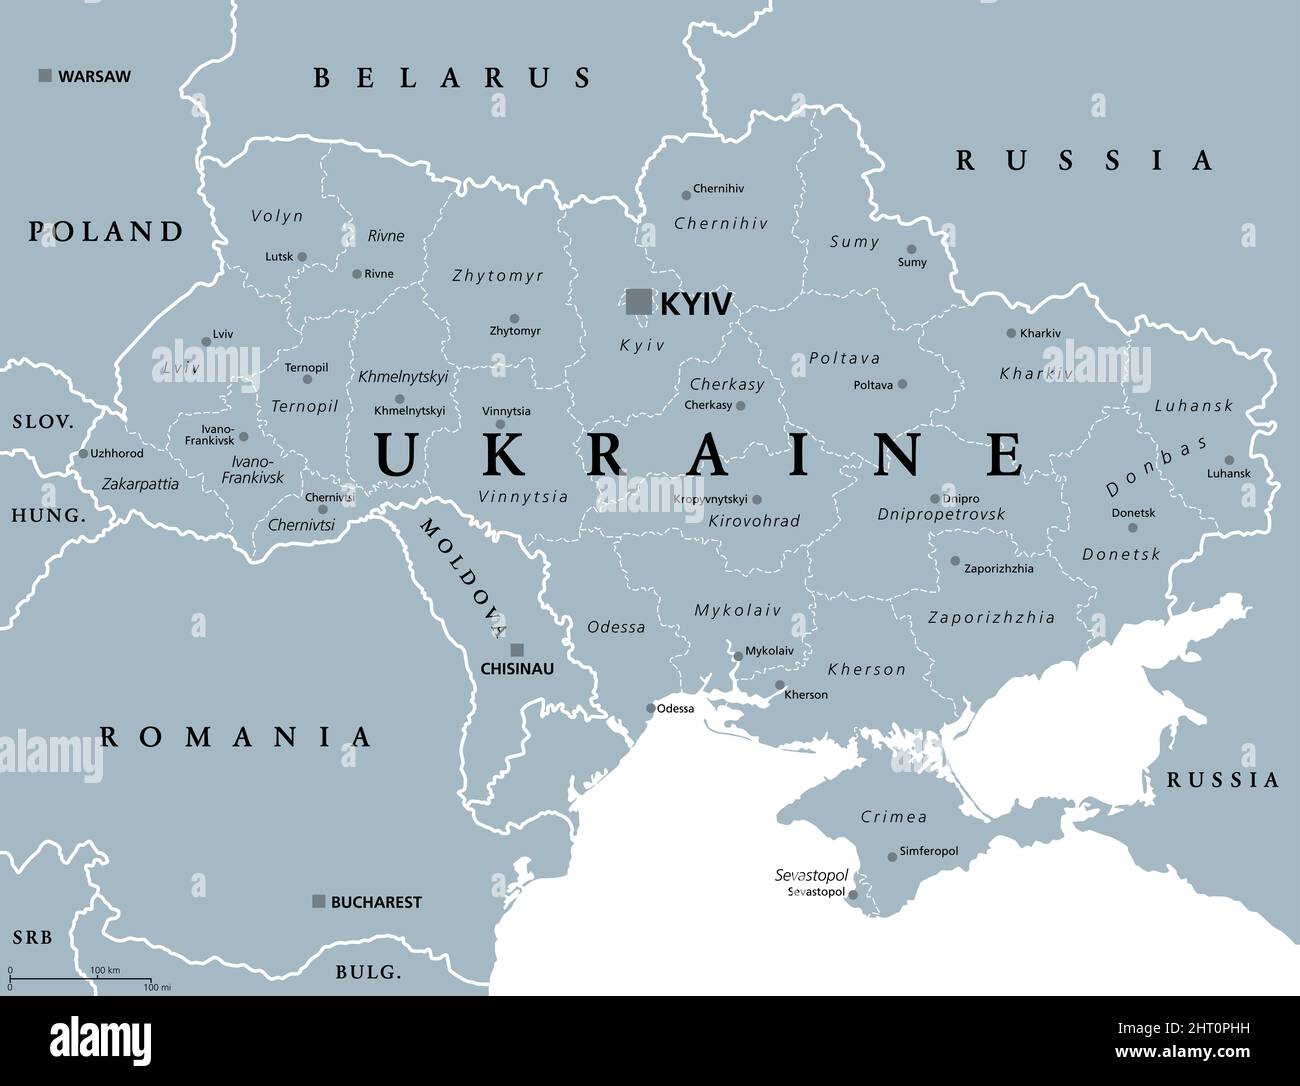 Ucraina, divisioni amministrative, mappa politica grigia. Paese e stato unitario dell'Europa orientale, con la capitale Kiev (Kiev). Suddivisione del paese. Foto Stock